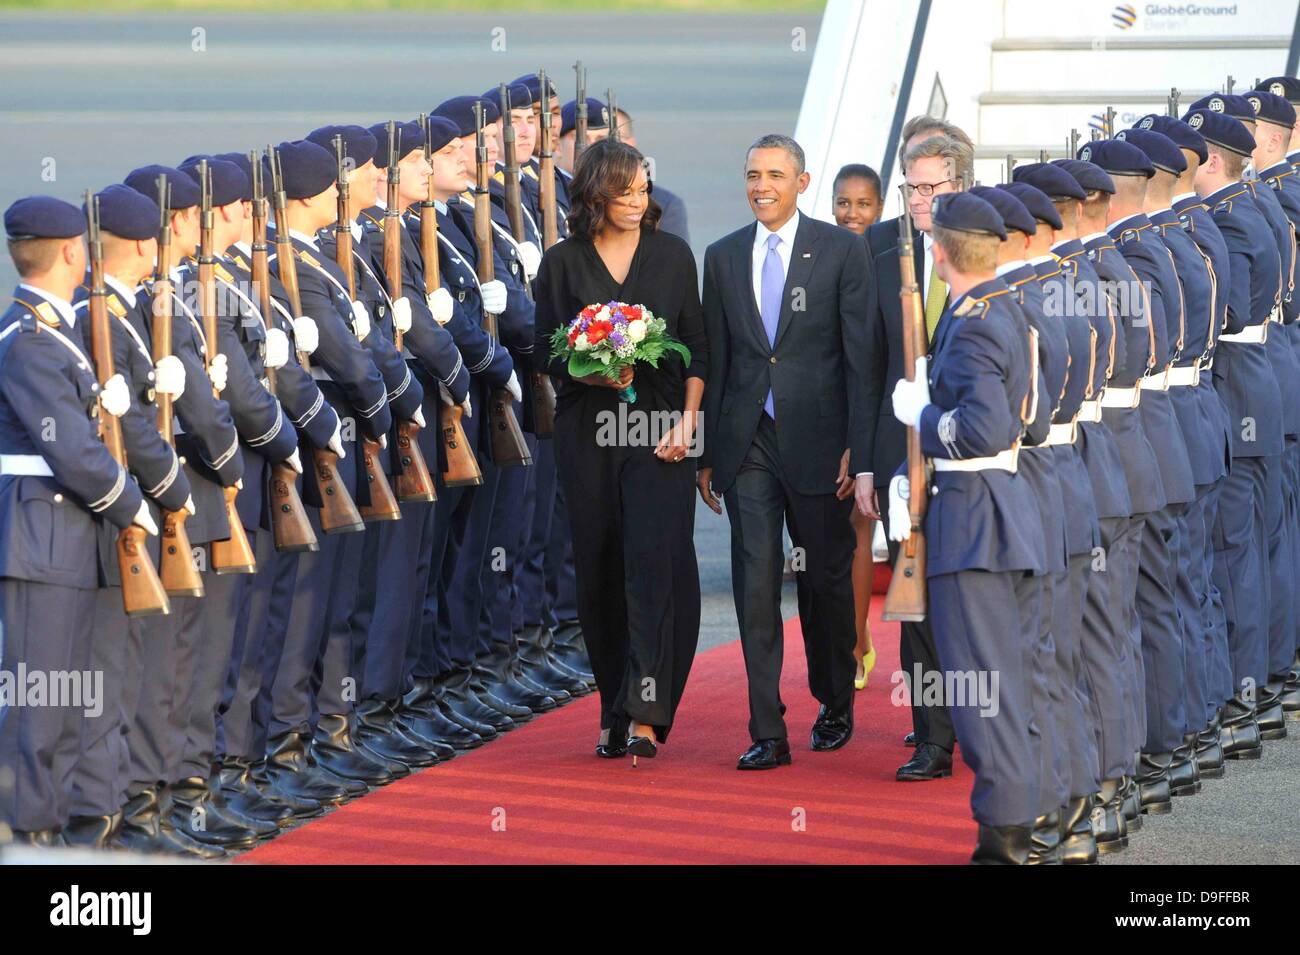 Le président Obama avec son épouse Michelle Obama et leurs filles Sasha et Malia est arrivé à Berlin le 18 juin pour sa première visite à la capitale allemande en tant que président, des heures après le départ du sommet du G8 en Irlande du Nord. Banque D'Images